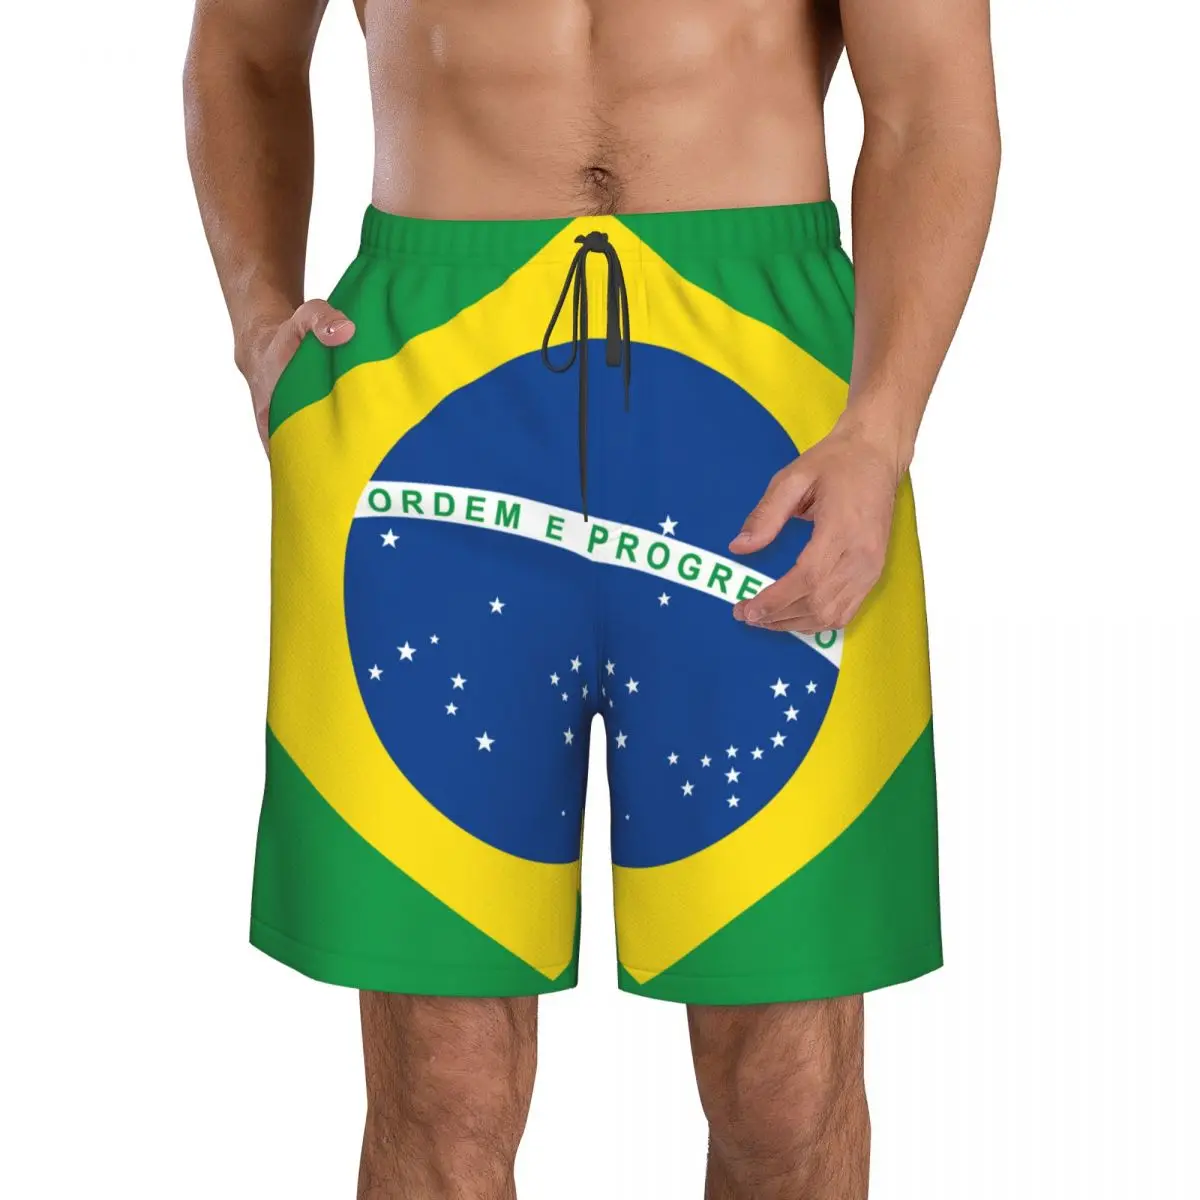 

Шорты мужские спортивные для бега, фитнеса, пляжа, баскетбола, бега, свободные короткие штаны с флагом Бразилии